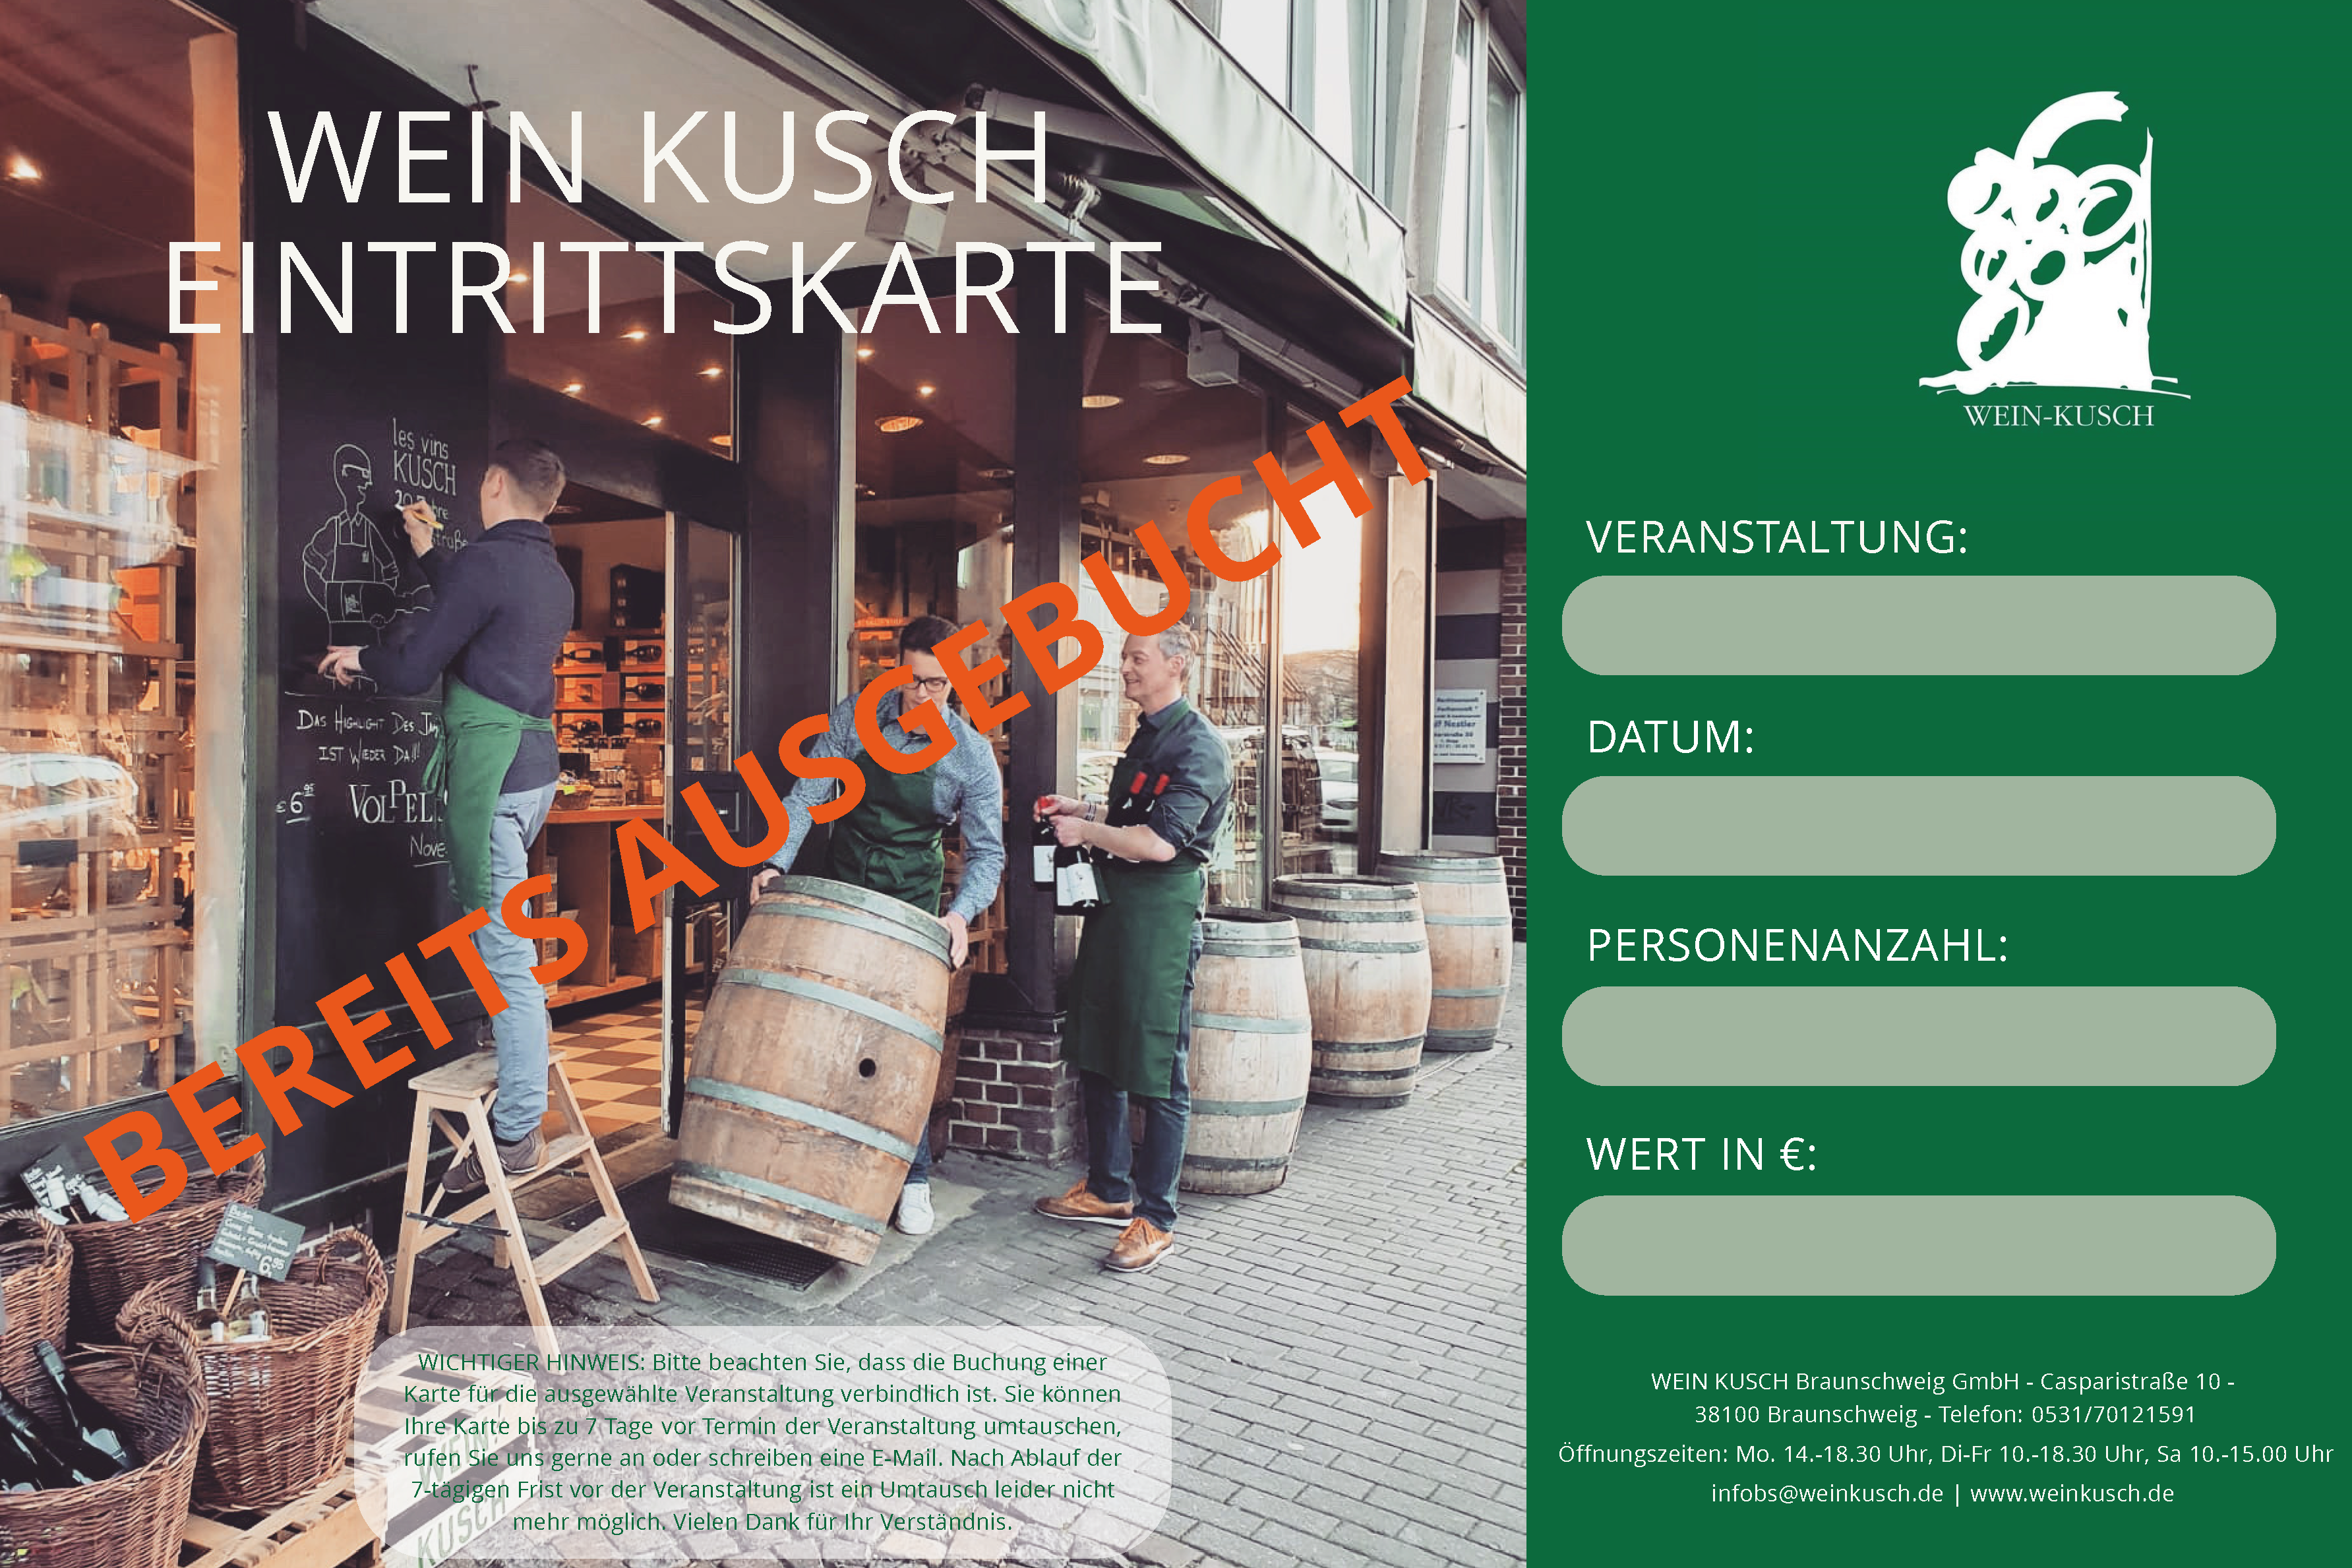 2023.05.26 - Whisky Tasting "Schottischer Single Malt" in Braunschweig 19.00 Uhr